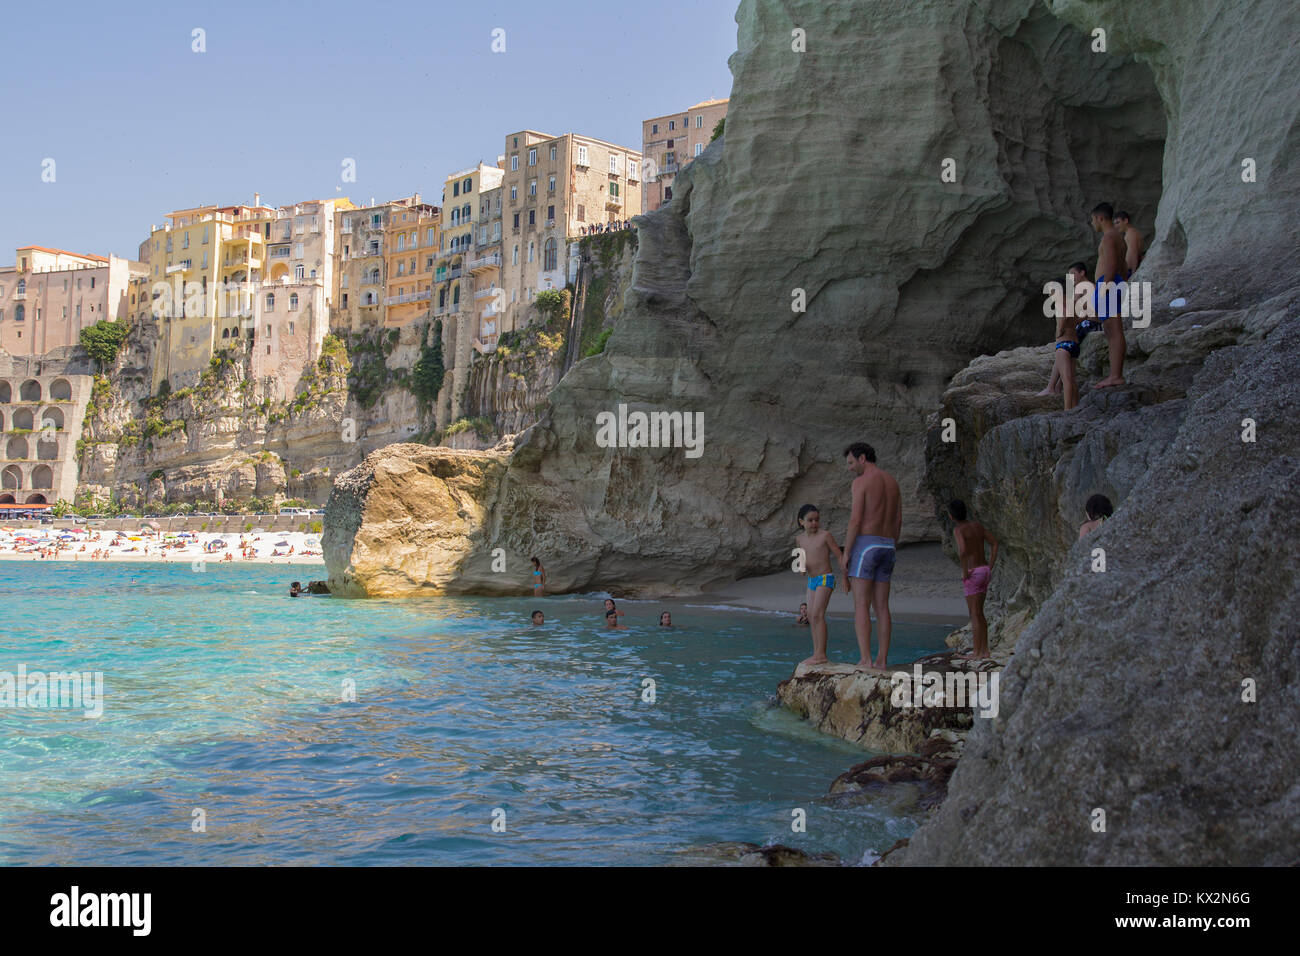 Tropea, Italia - Giugno 2013: persone nuoto sulla spiaggia in una popolare destinazione estiva, Tropea, Italia. Foto Stock